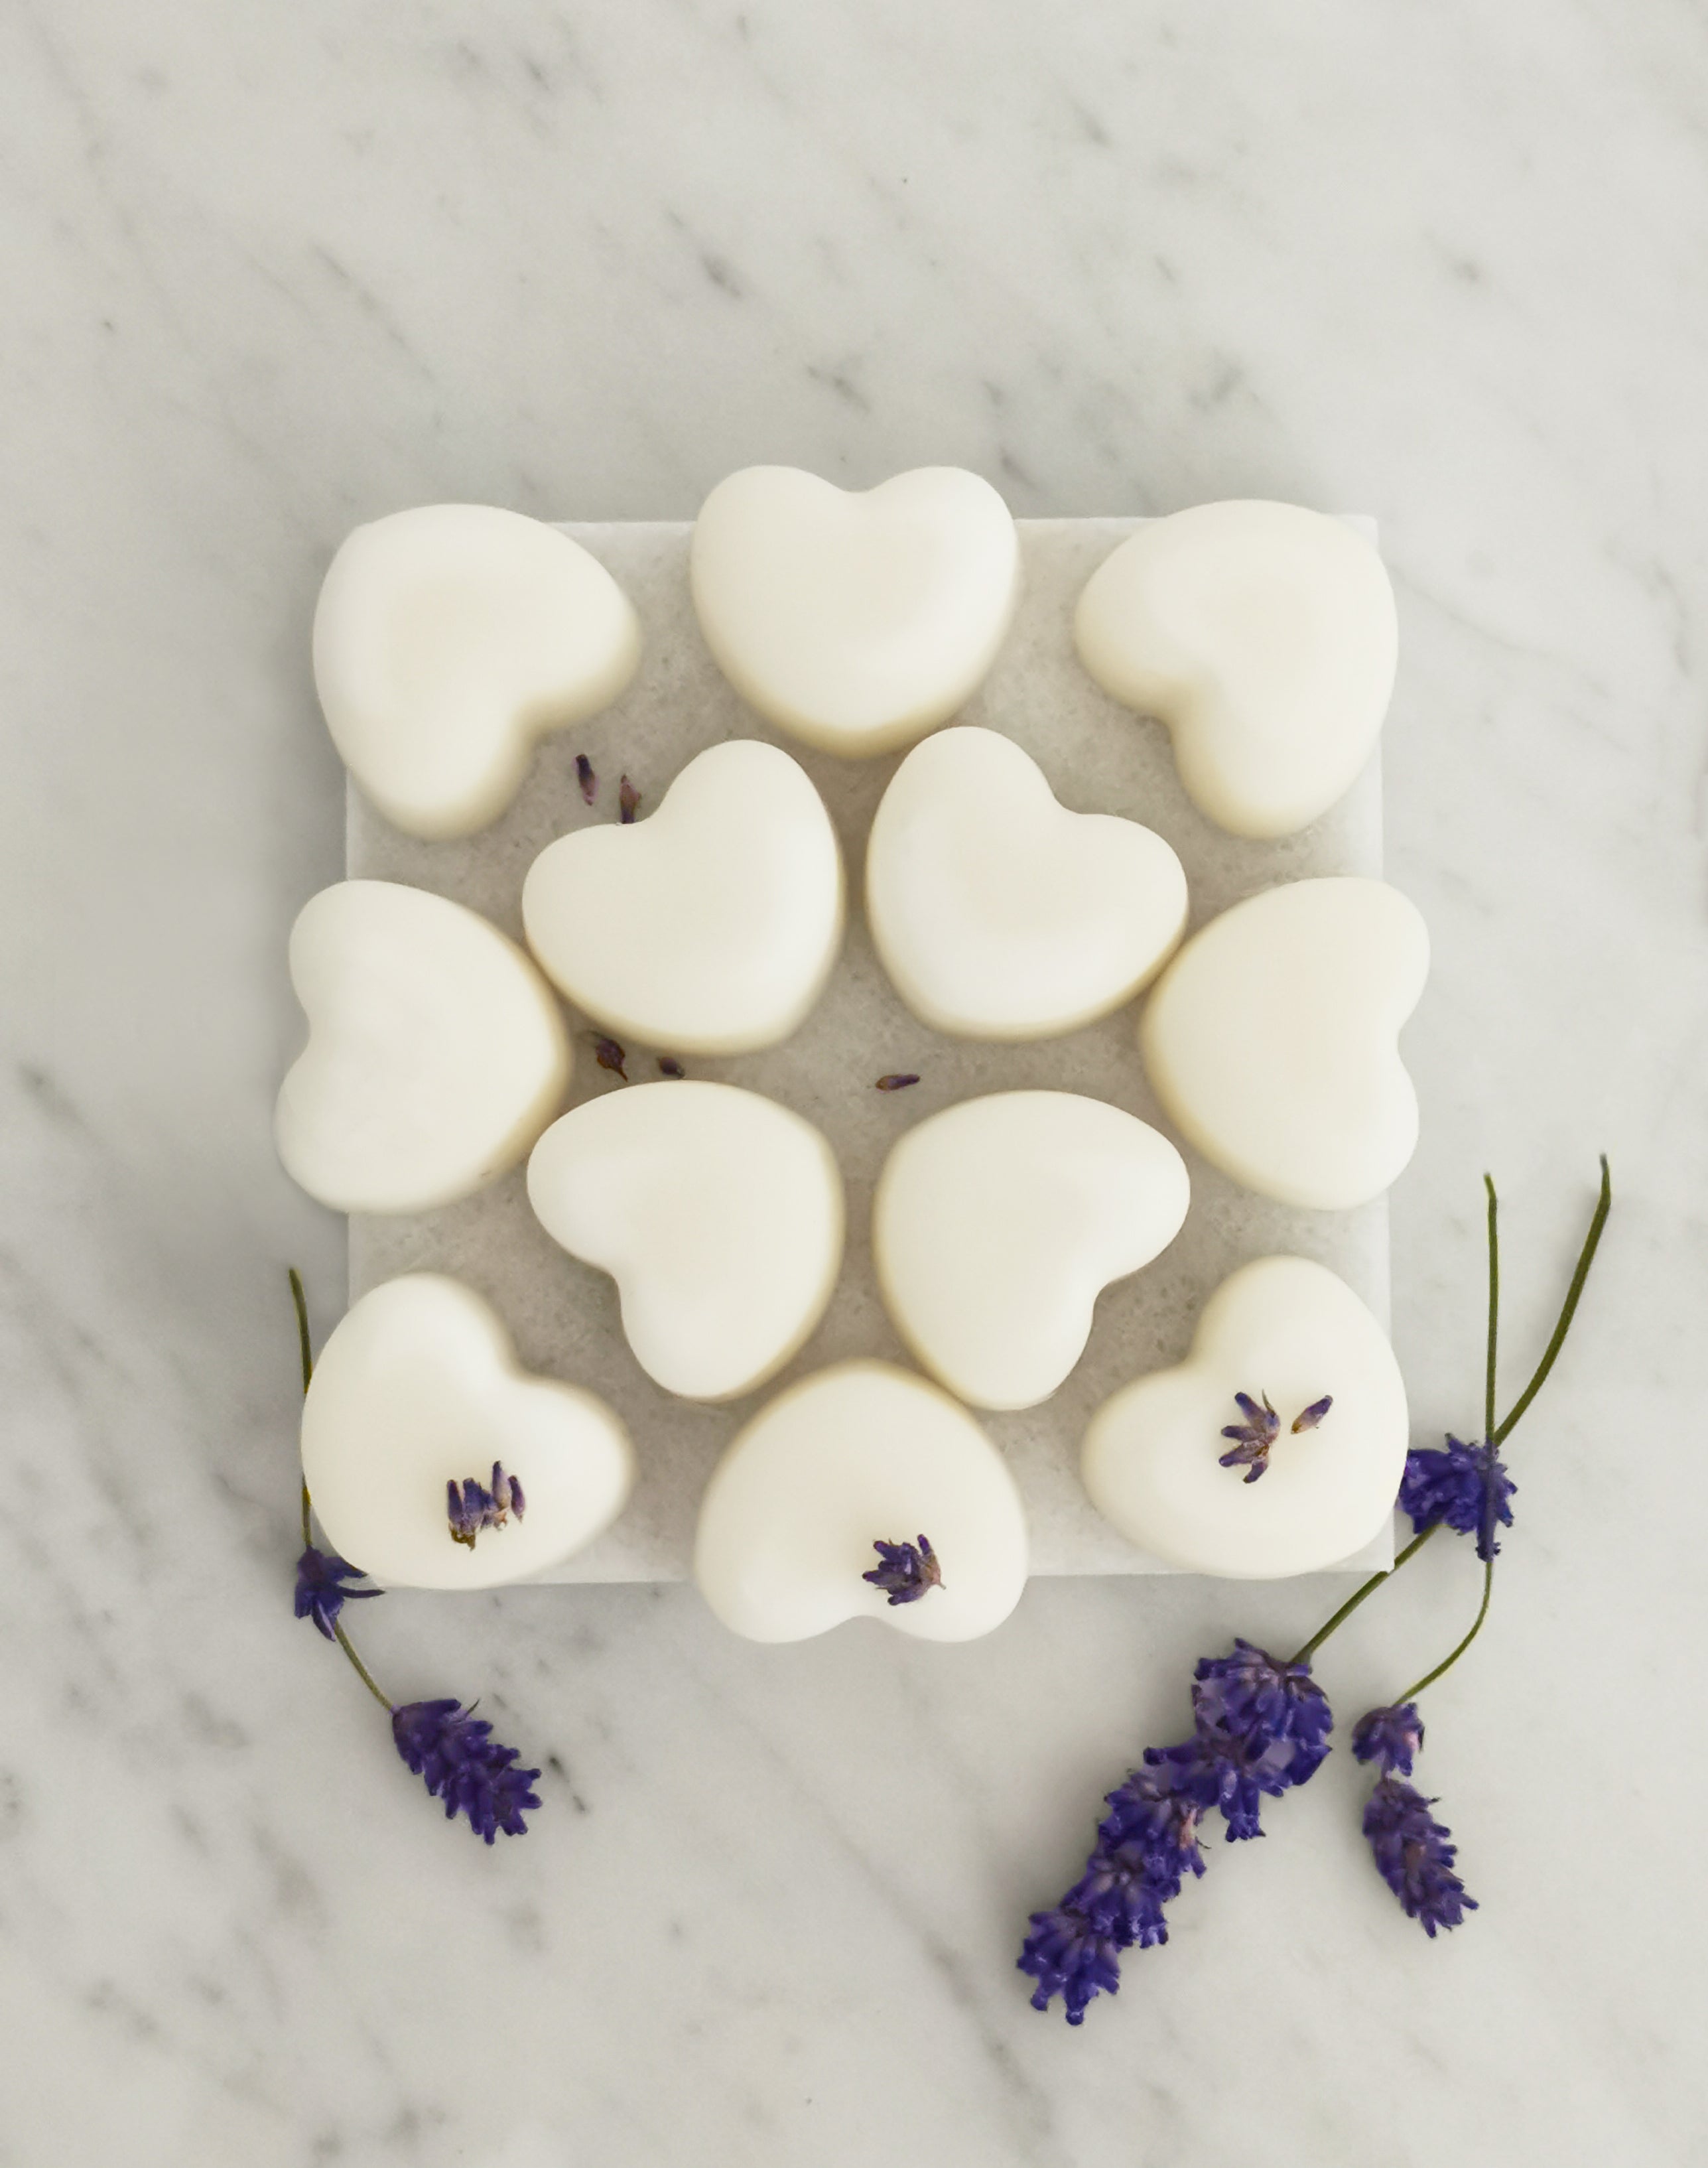 Lavender & Ylang Ylang Aromatherapy Naturally Scented Wax Melts